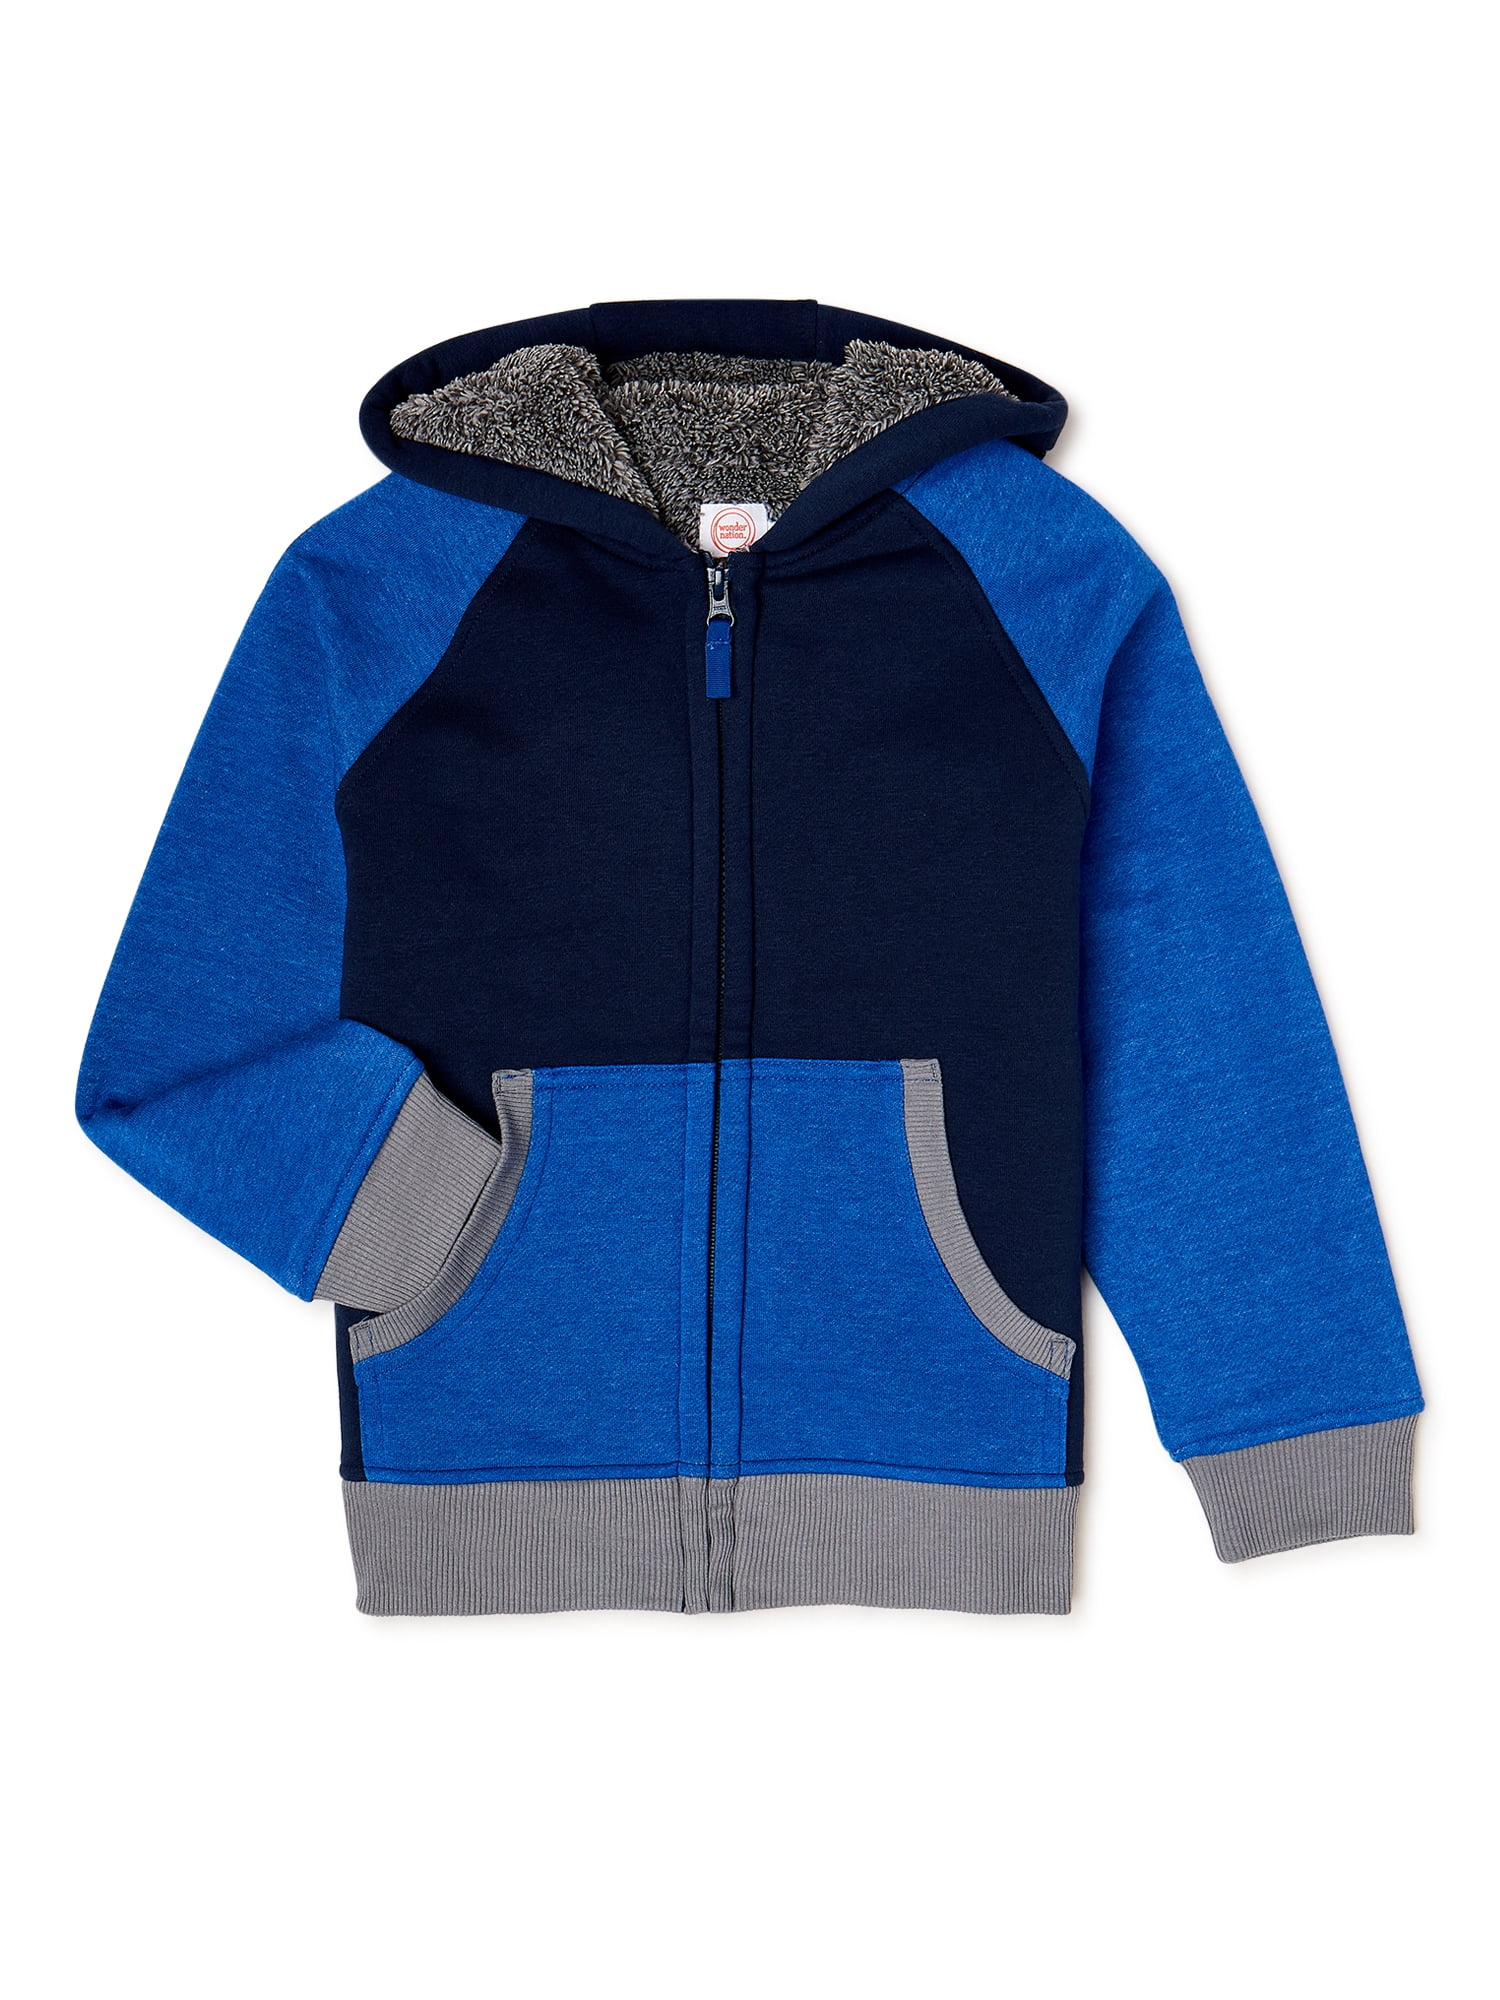 Kids Sherpa Lined Fleece Full Zip Up Hooded Sweatshirt Jacket